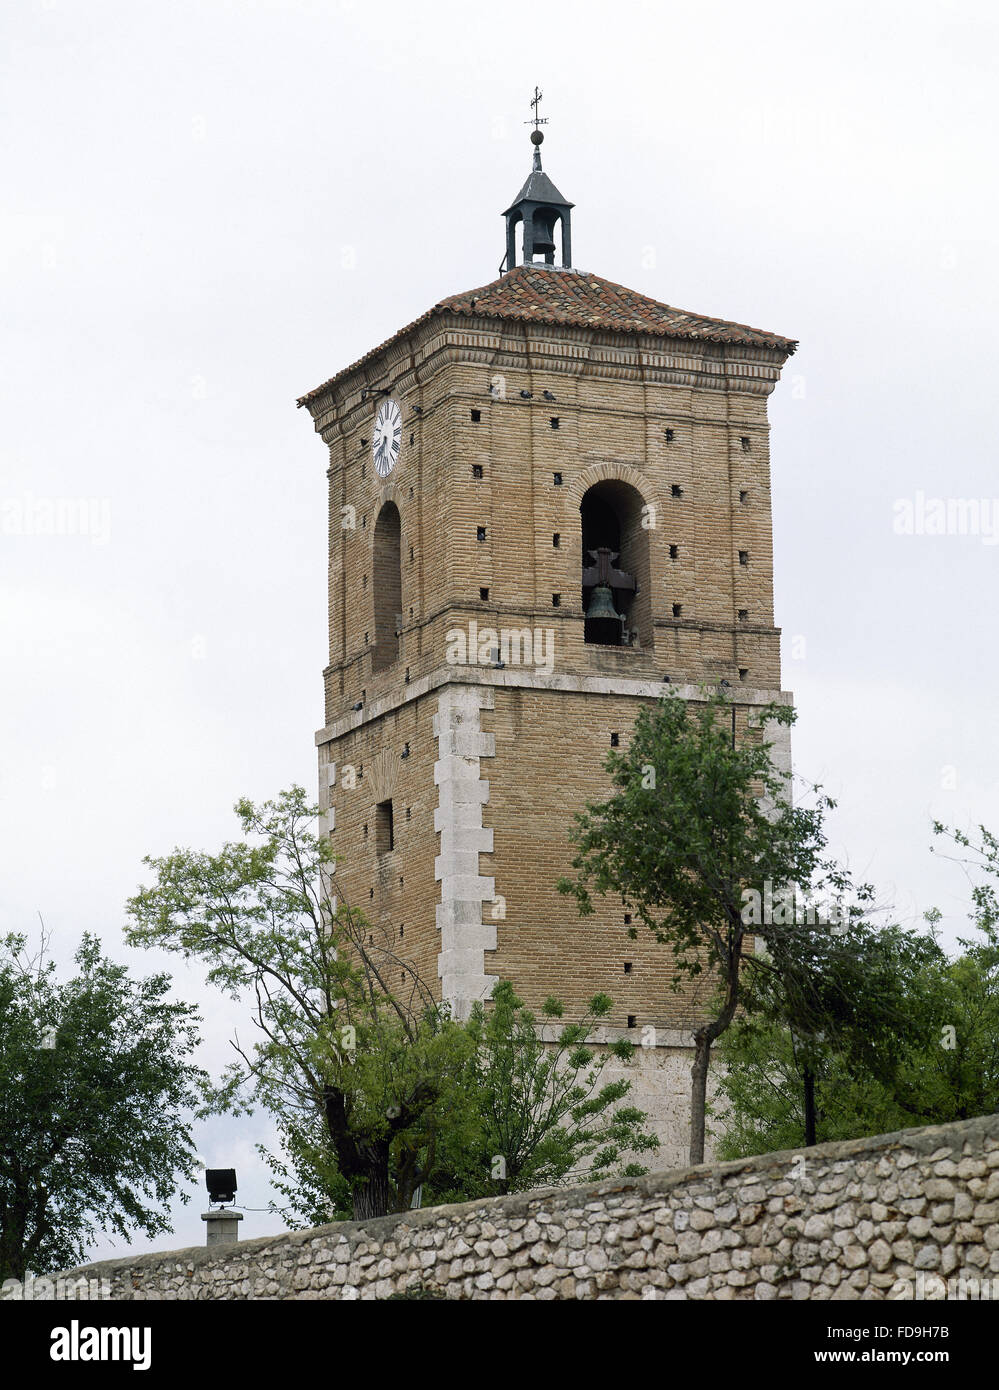 L'Espagne. Chinchon. Vue de la tour de l'horloge, qui appartenait à la paroisse disparue église Notre Dame de grâce, détruit en 1808 par les troupes françaises. Communauté de Madrid. Banque D'Images